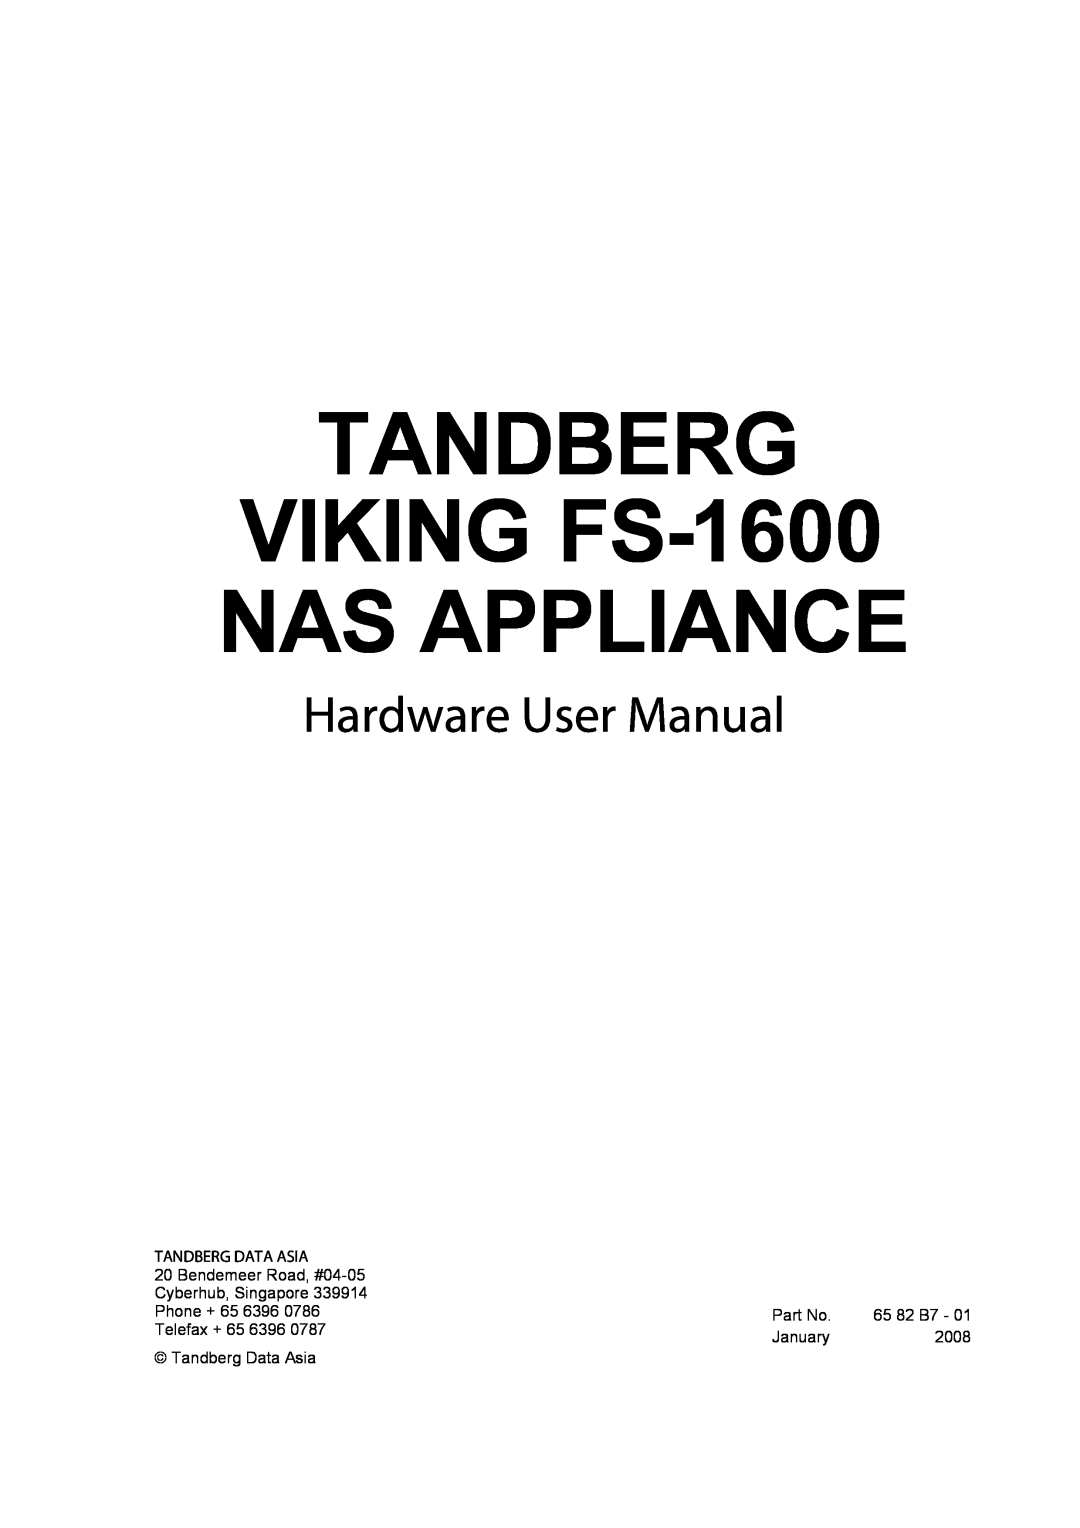 Tandberg Data user manual TANDBERG VIKING FS-1600 NAS APPLIANCE, Hardware User Manual, Tandberg Data Asia, Part No 